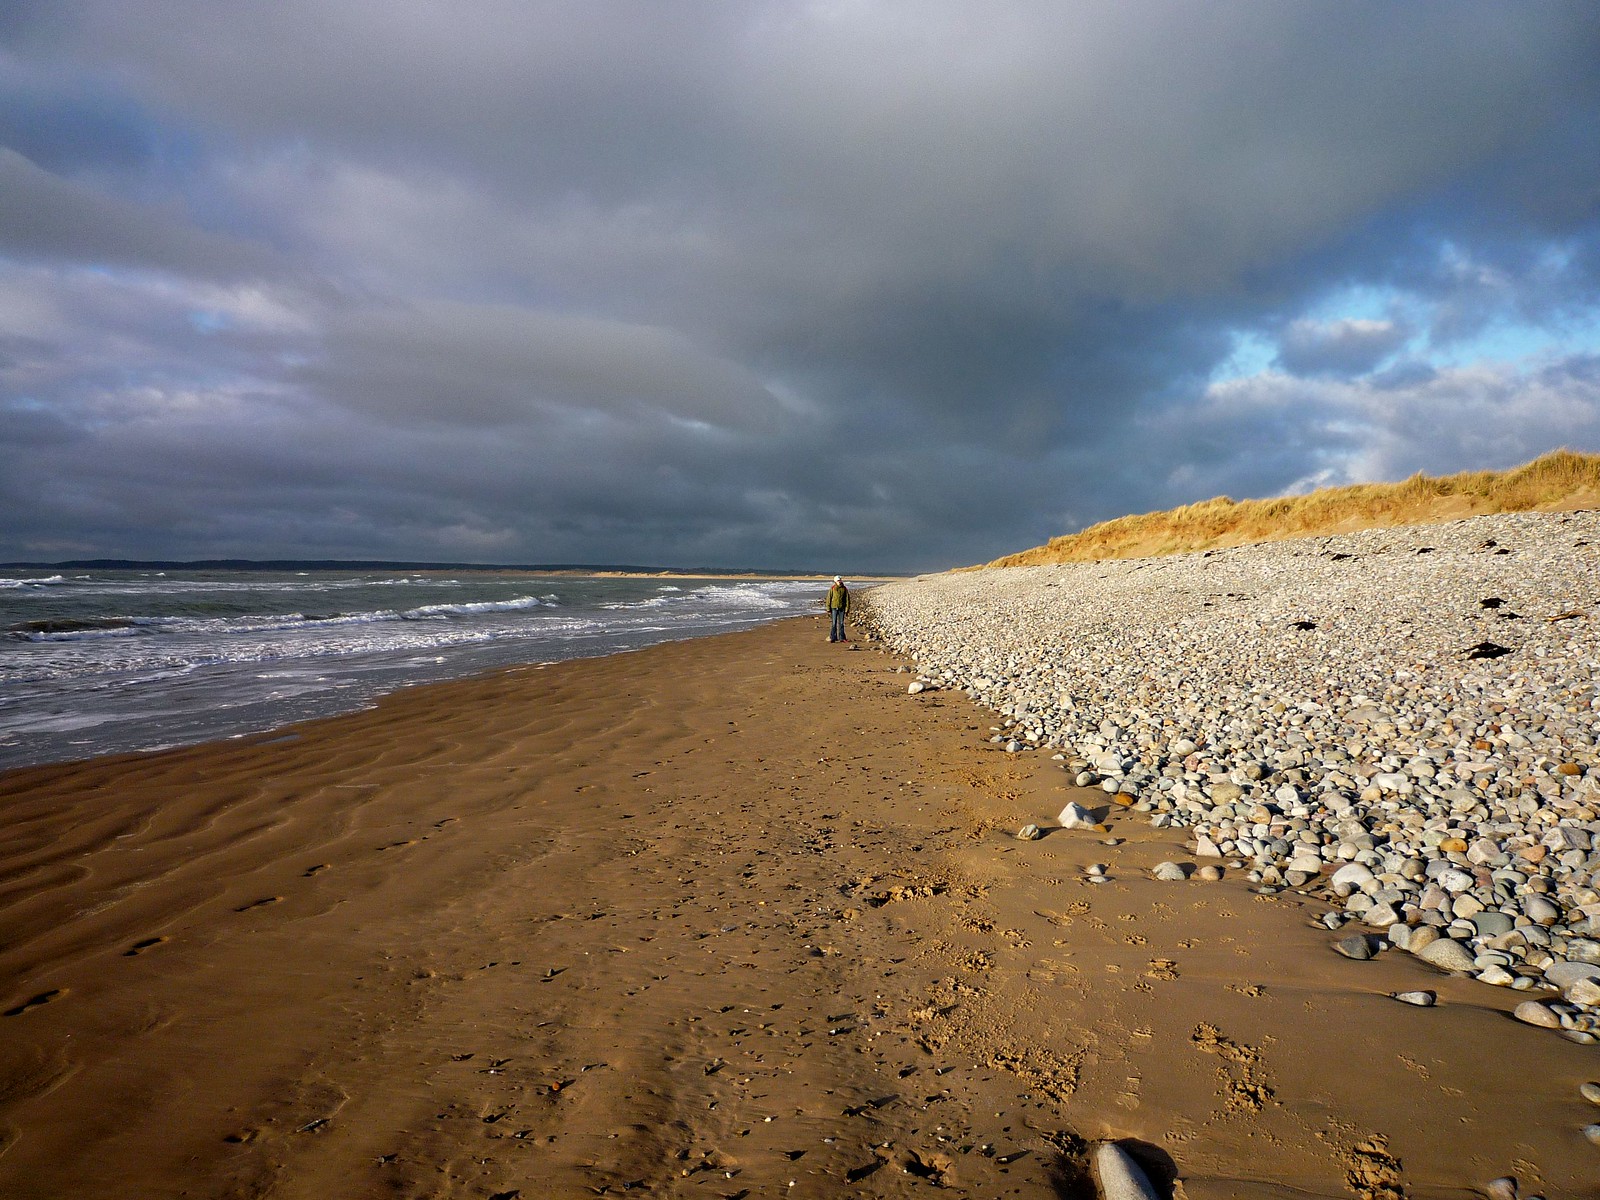 Dinas Dinlle Beach - Gwynedd